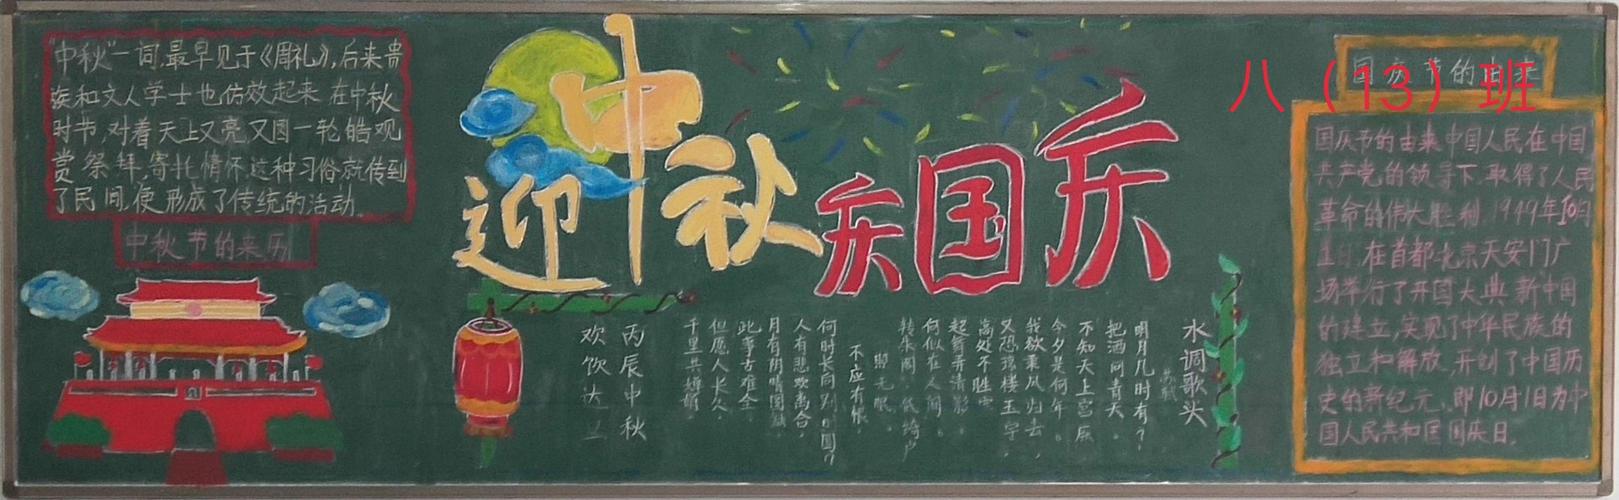 开学了老师您辛苦了庆中秋迎国庆 九月主题黑板报展示